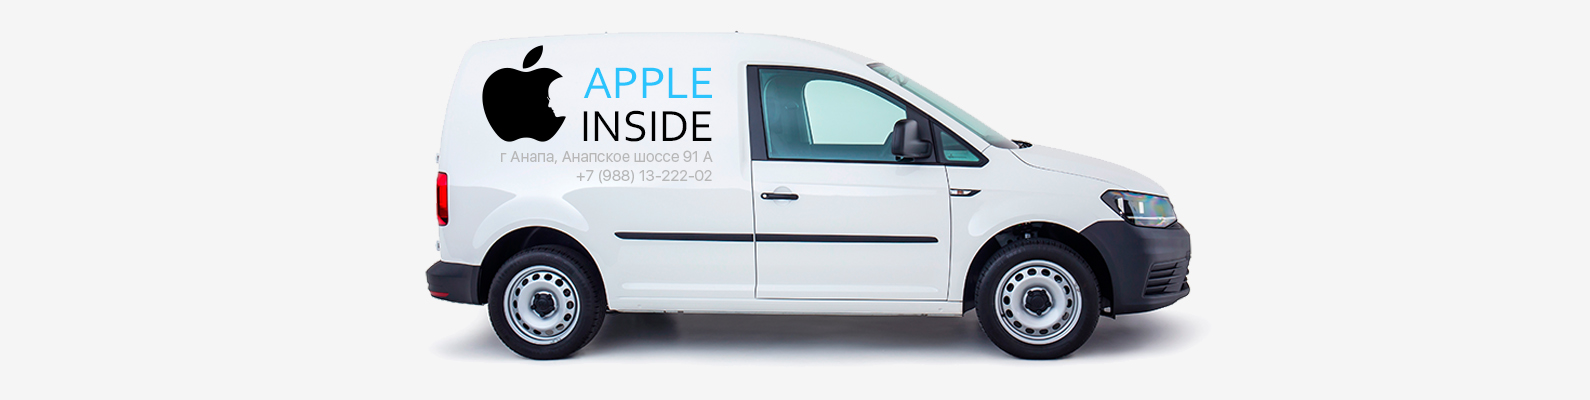 dostavka-apple-inside.jpg